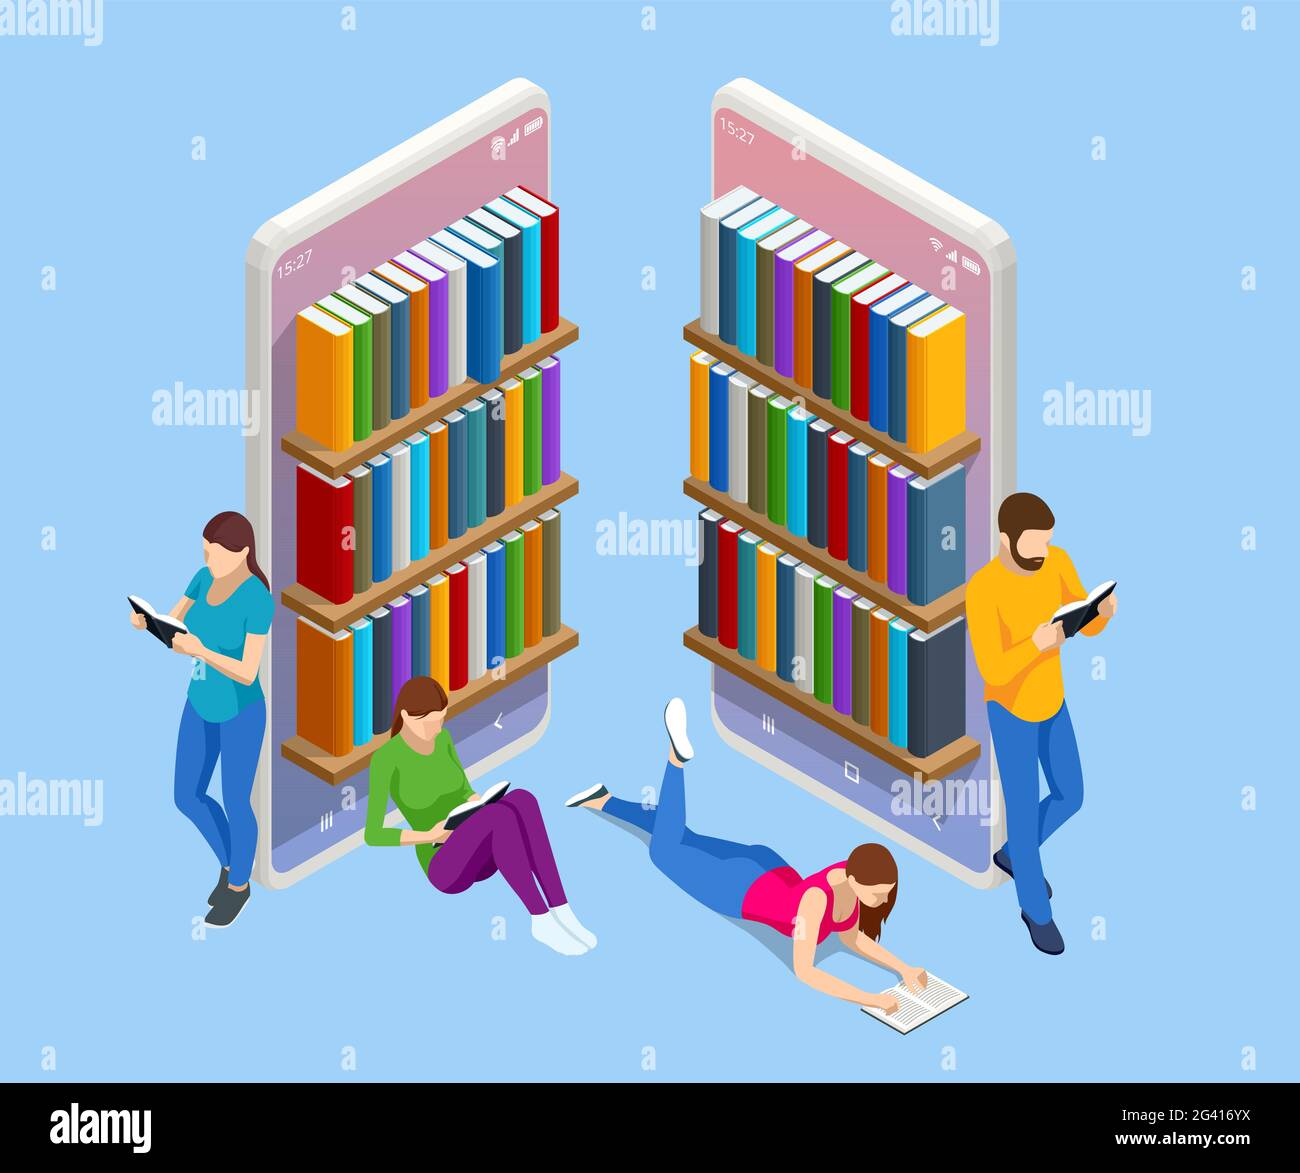 Aplicación de biblioteca en línea isométrica para lectura, concepto de librerías. Aprendizaje electrónico desde casa en línea estudiando en smartphone. Ilustración del Vector